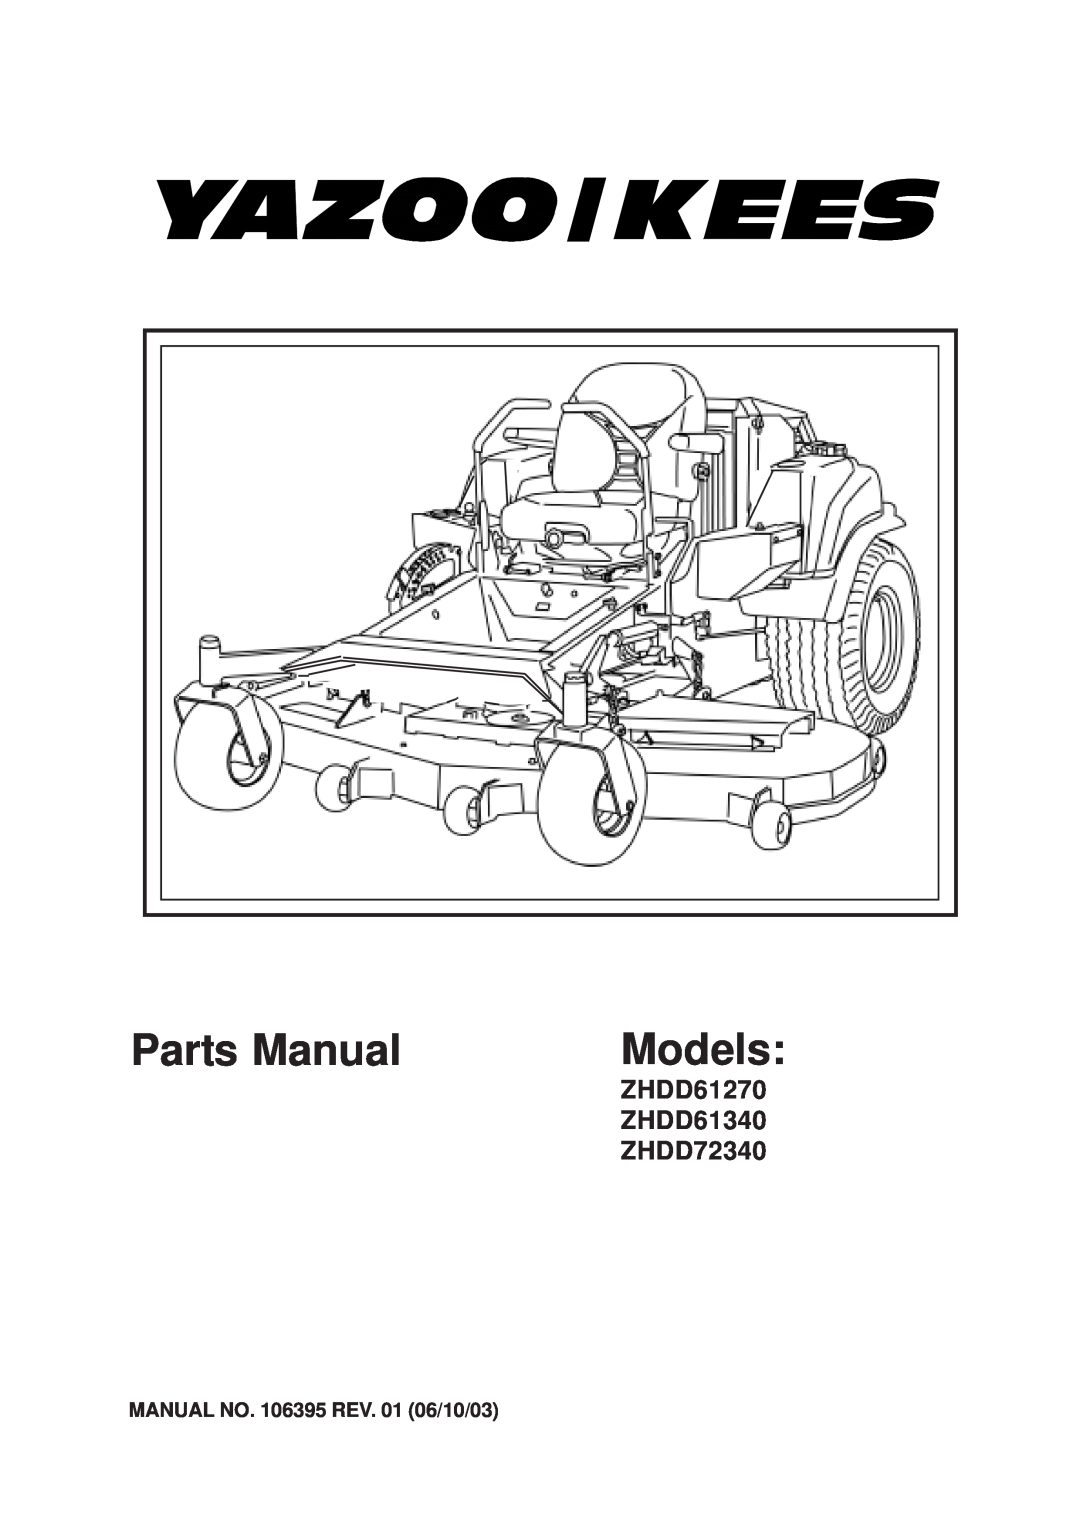 Yazoo/Kees 4HRK20 manual ZHDD61270 ZHDD61340 ZHDD72340, MANUAL NO. 106395 REV. 01 06/10/03, Parts Manual, Models 